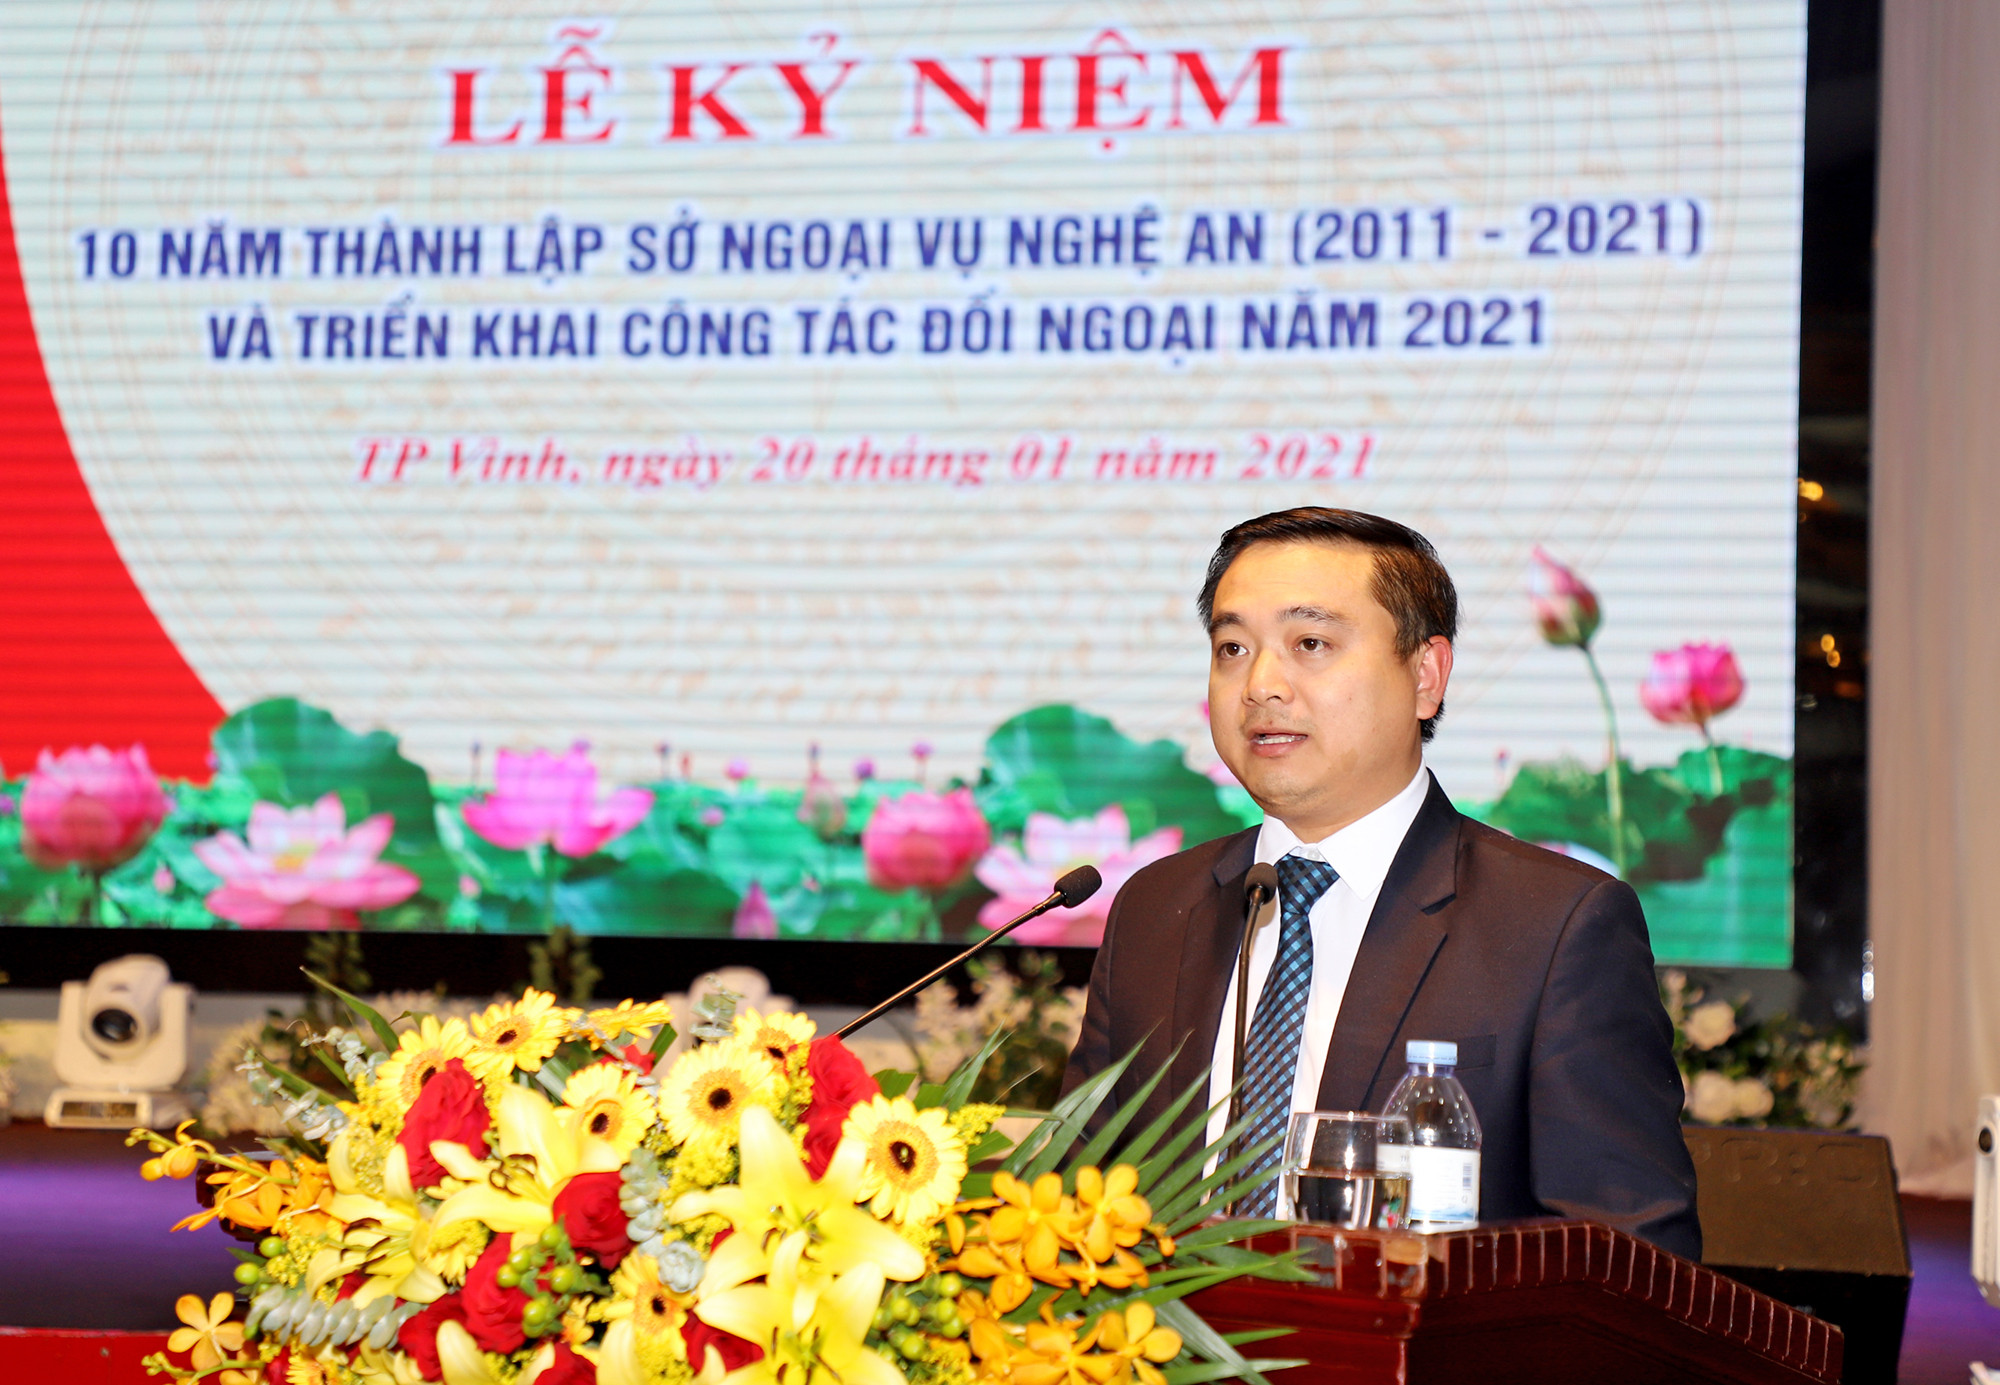 Ông Nguyễn Thế Thân - Phó Giám đốc Sở Ngoại vụ trình bày báo cáo tổng kết công tác đối ngoại năm 2020 và triển khai nhiệm vụ năm 2021. Ảnh: Phạm Bằng